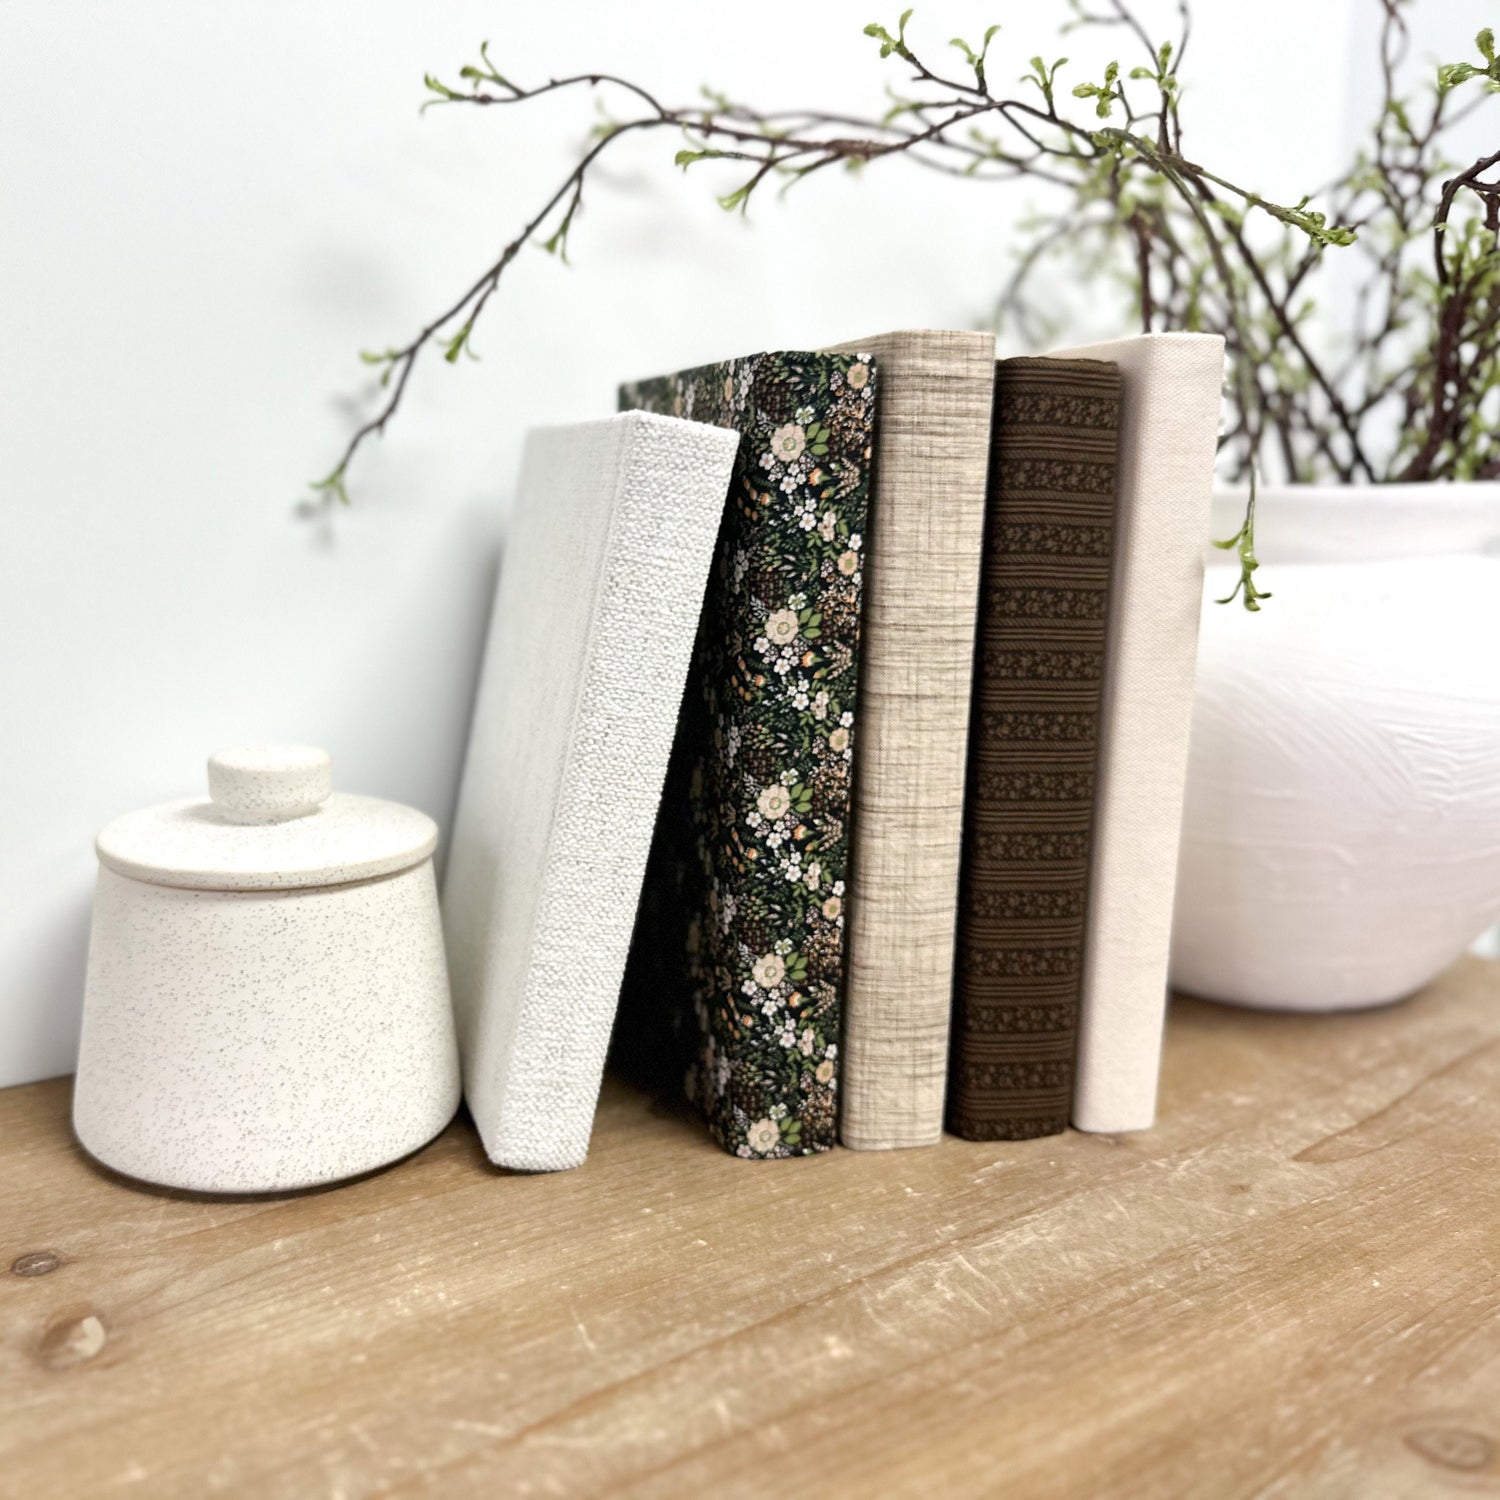 Fabric Covered Decorative Books for Home Decor, Shelf Decor, Book Bundle